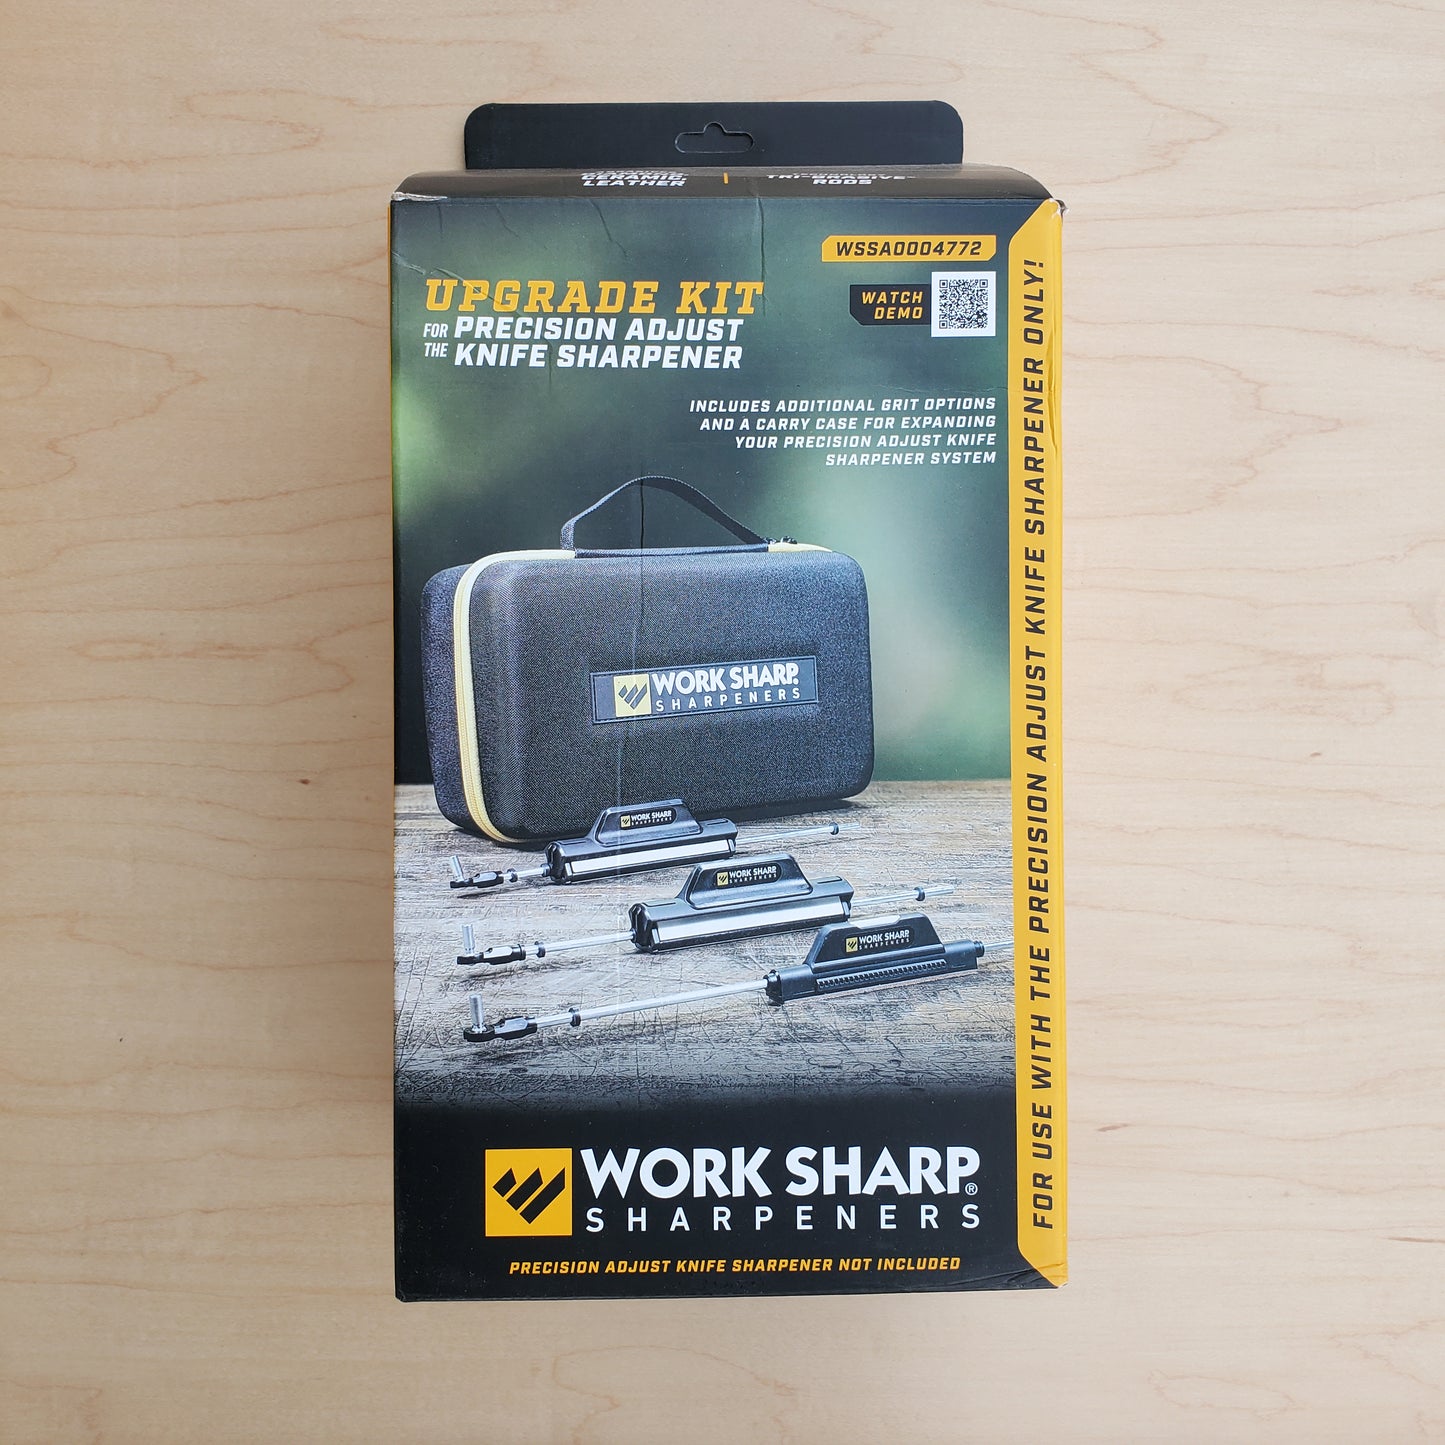 Work Sharp Precision Adjust Knife Sharpener Upgrade Kit